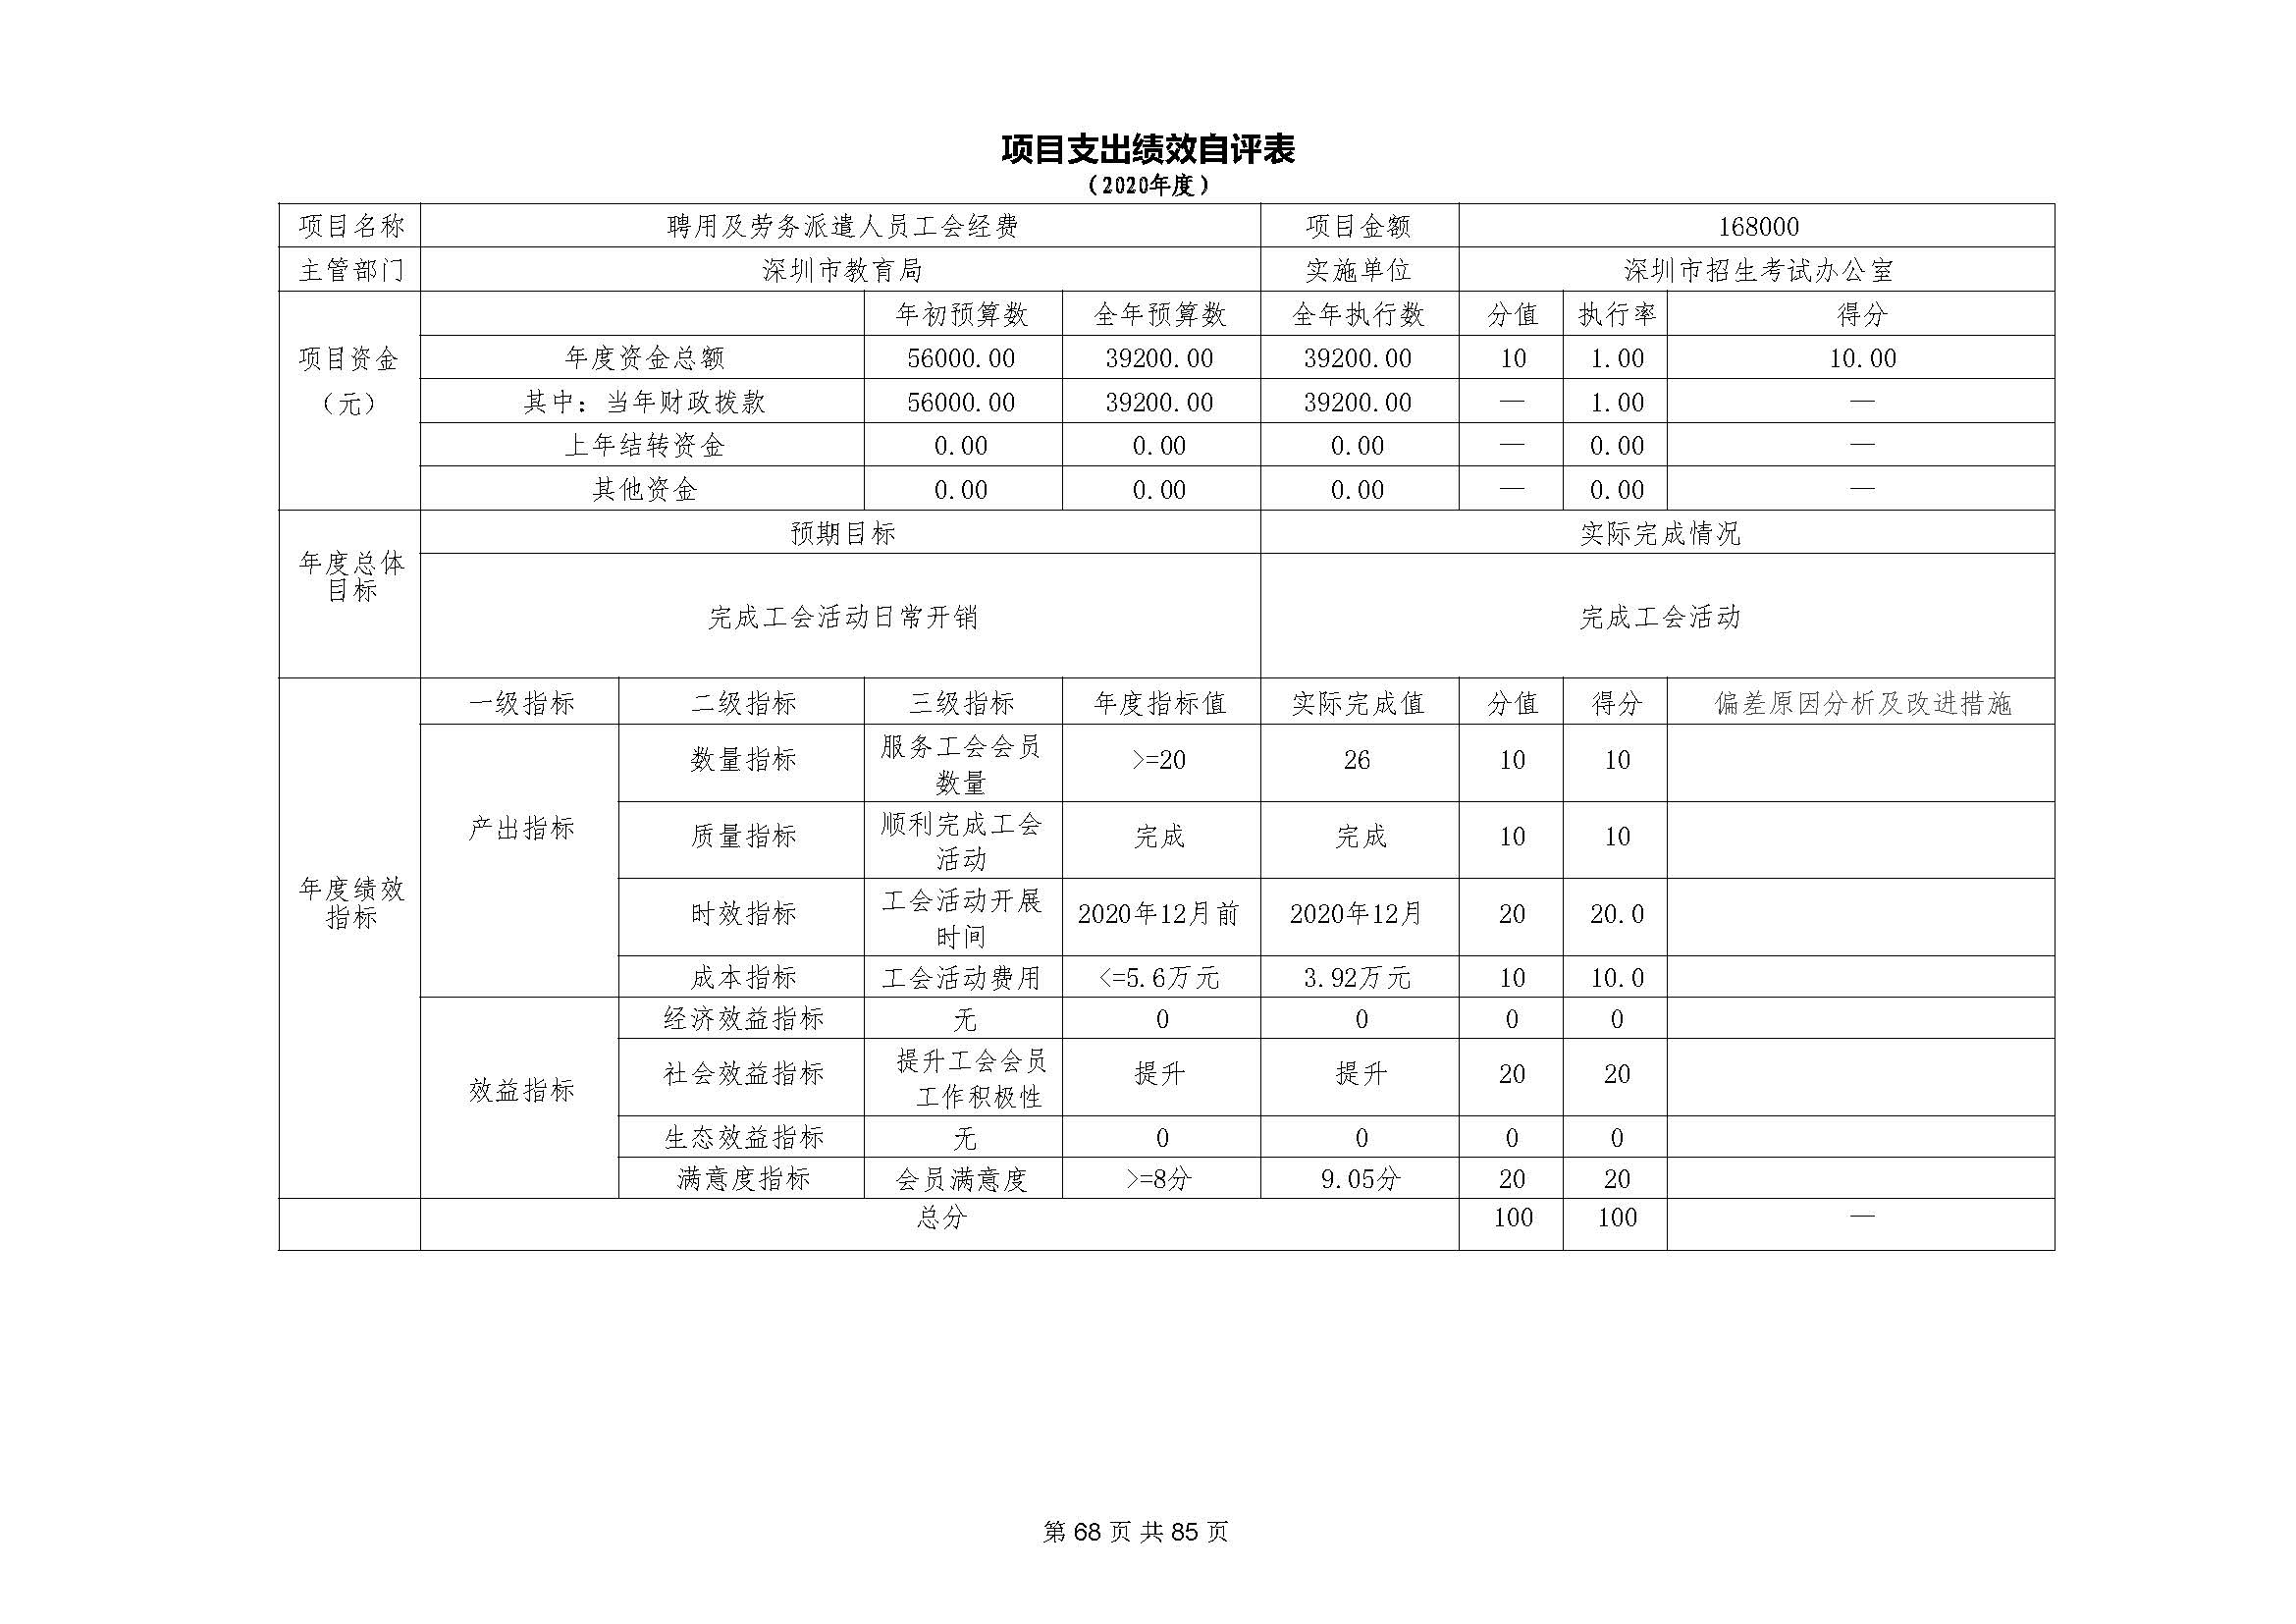 深圳市招生考试办公室2020年度部门决算_页面_69.jpg